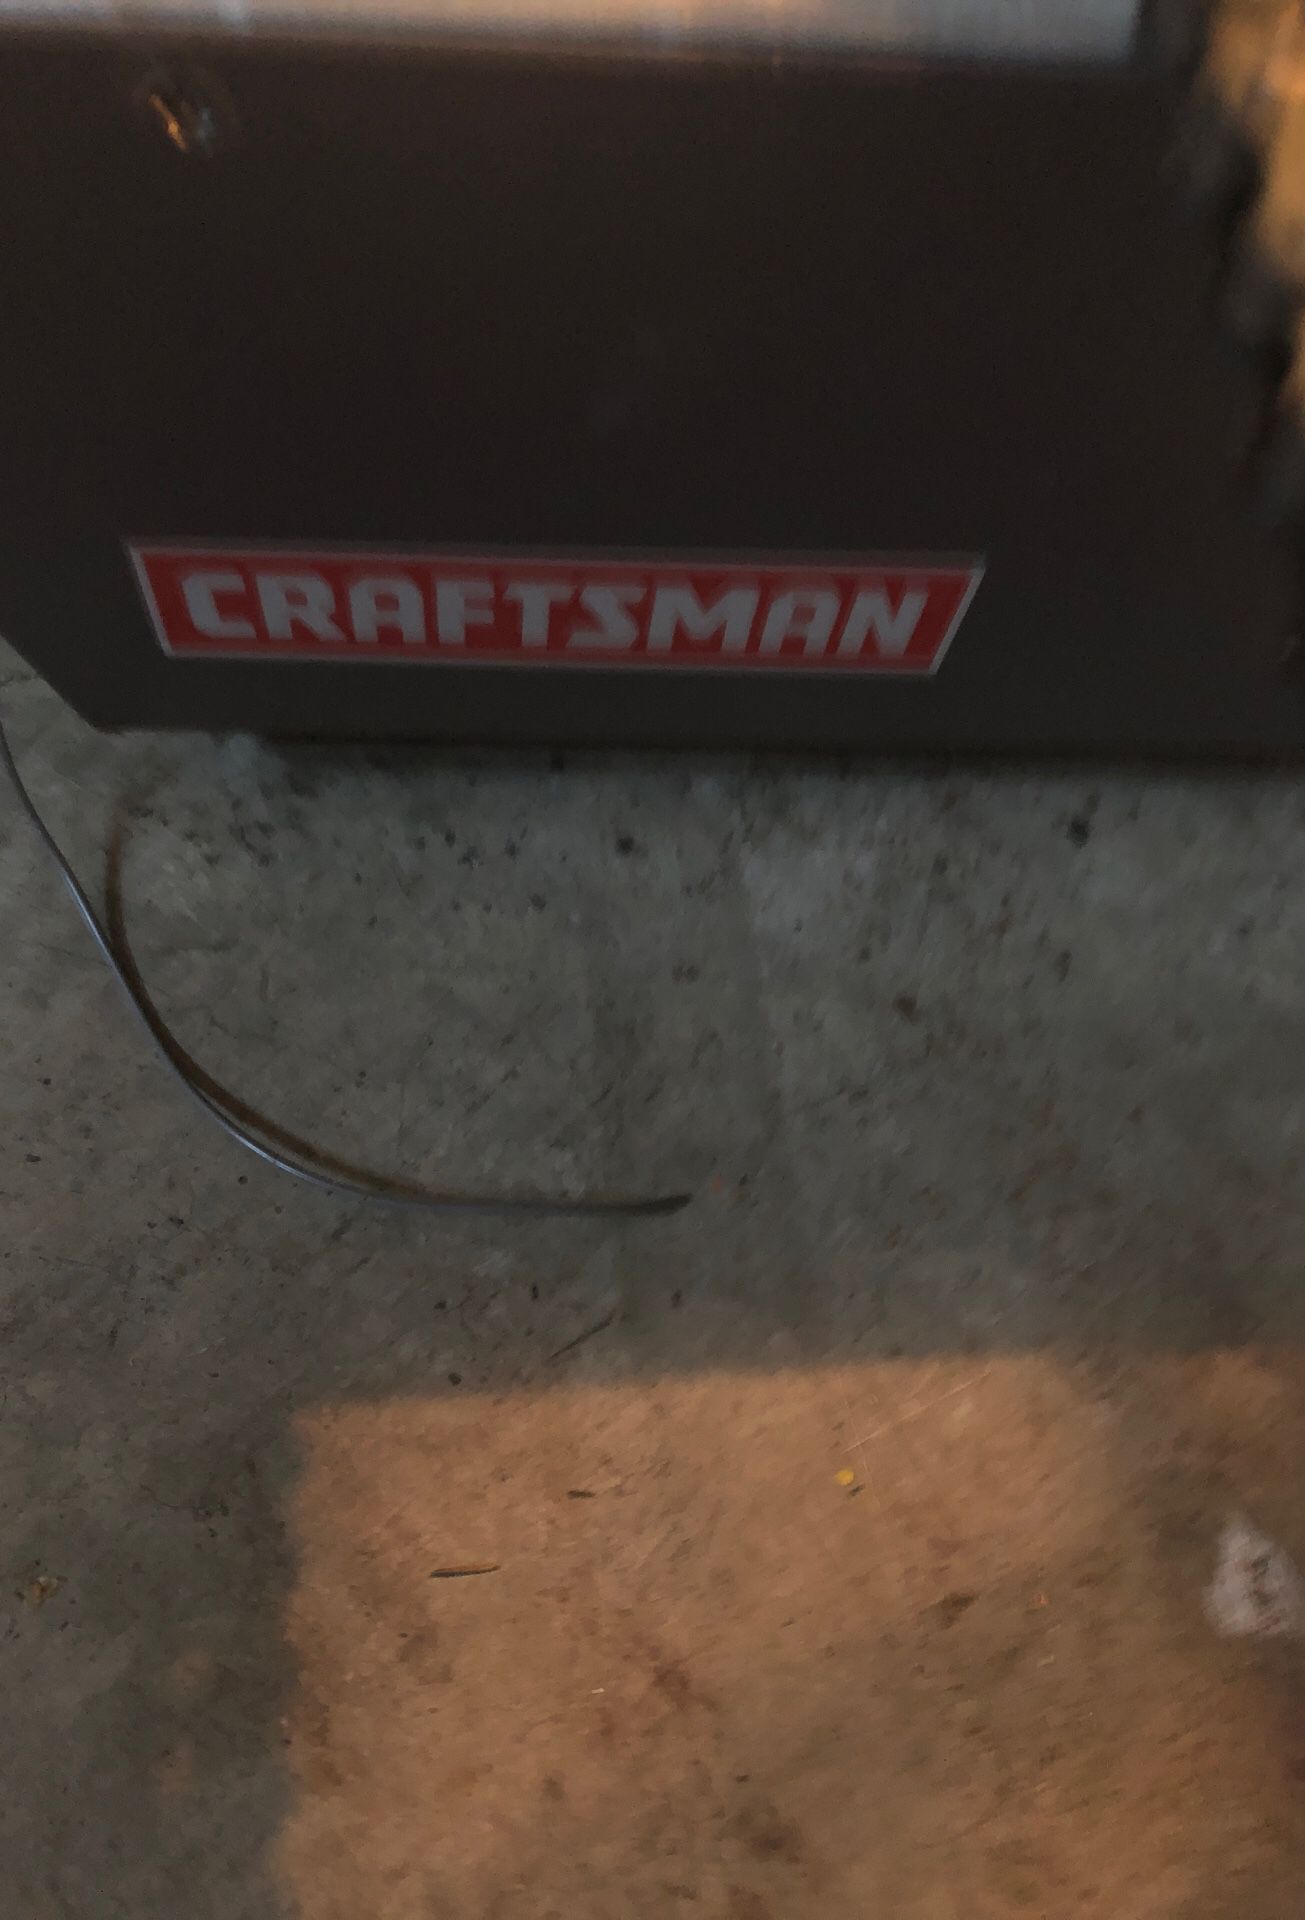 Craftsman garage door opener w/ 1 remote